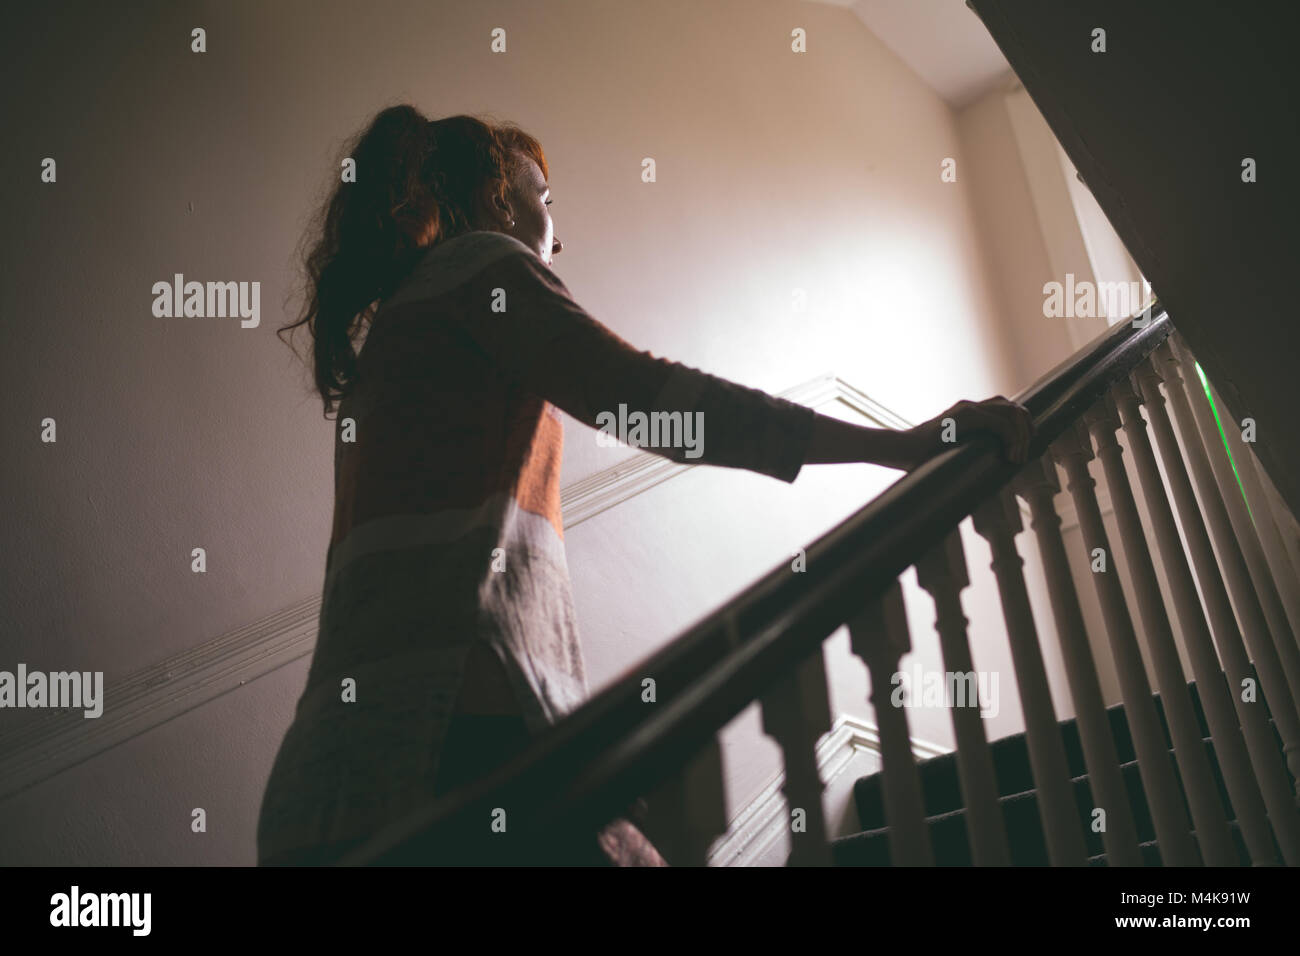 Woman walking upstairs at home Stock Photo